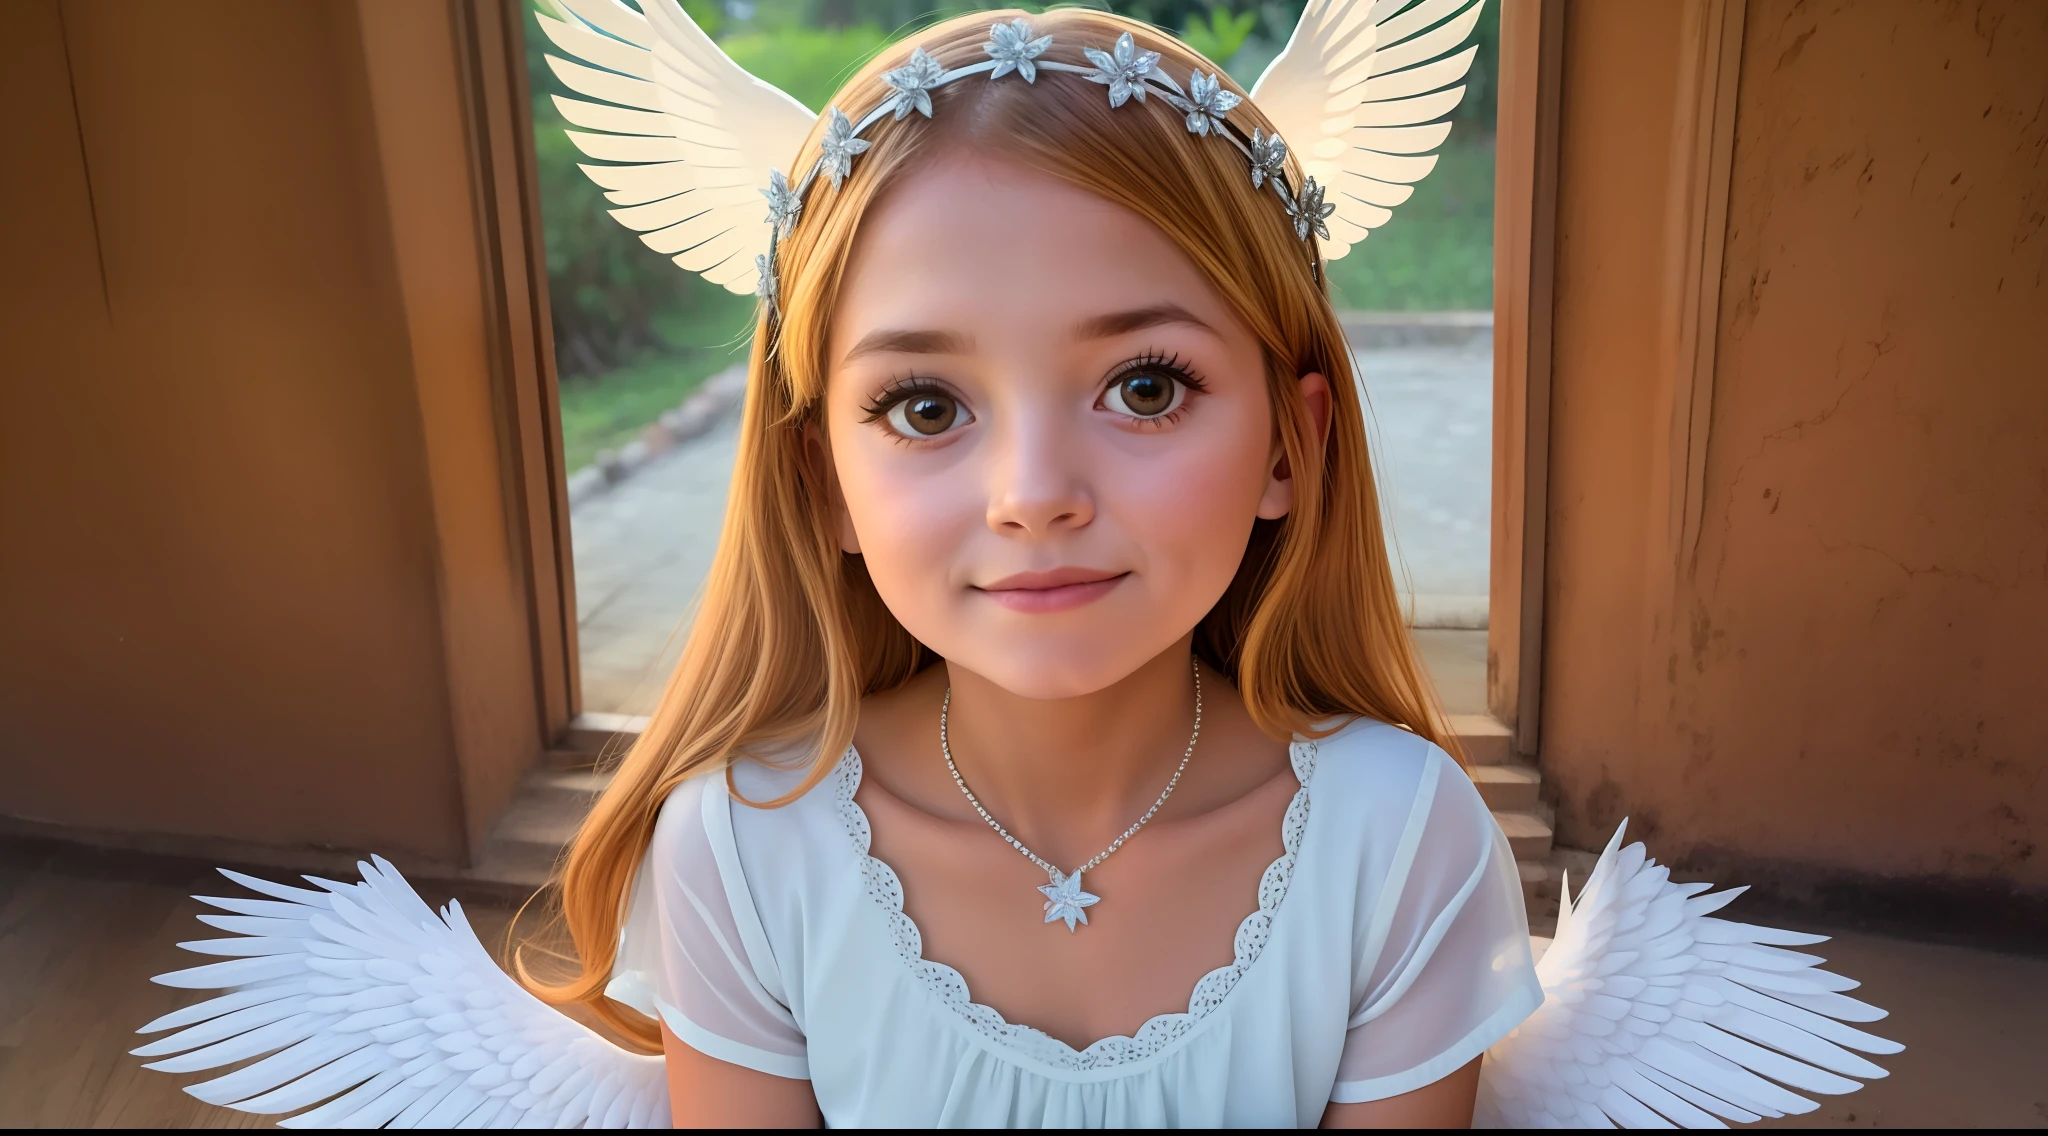 A beautiful 6-year-old blonde girl dressed as an angel with white wings and a halo on her head, de uma menina angel bonita, menina com asas de angel,  do angel, angels em vestidos de gaze branca, usando halo de angel, asas de angel grande bem aberto, angel, envolvendo o rosto coberto de halo de angel, girl-centered panoramic view, full-body photos, de angel lindo